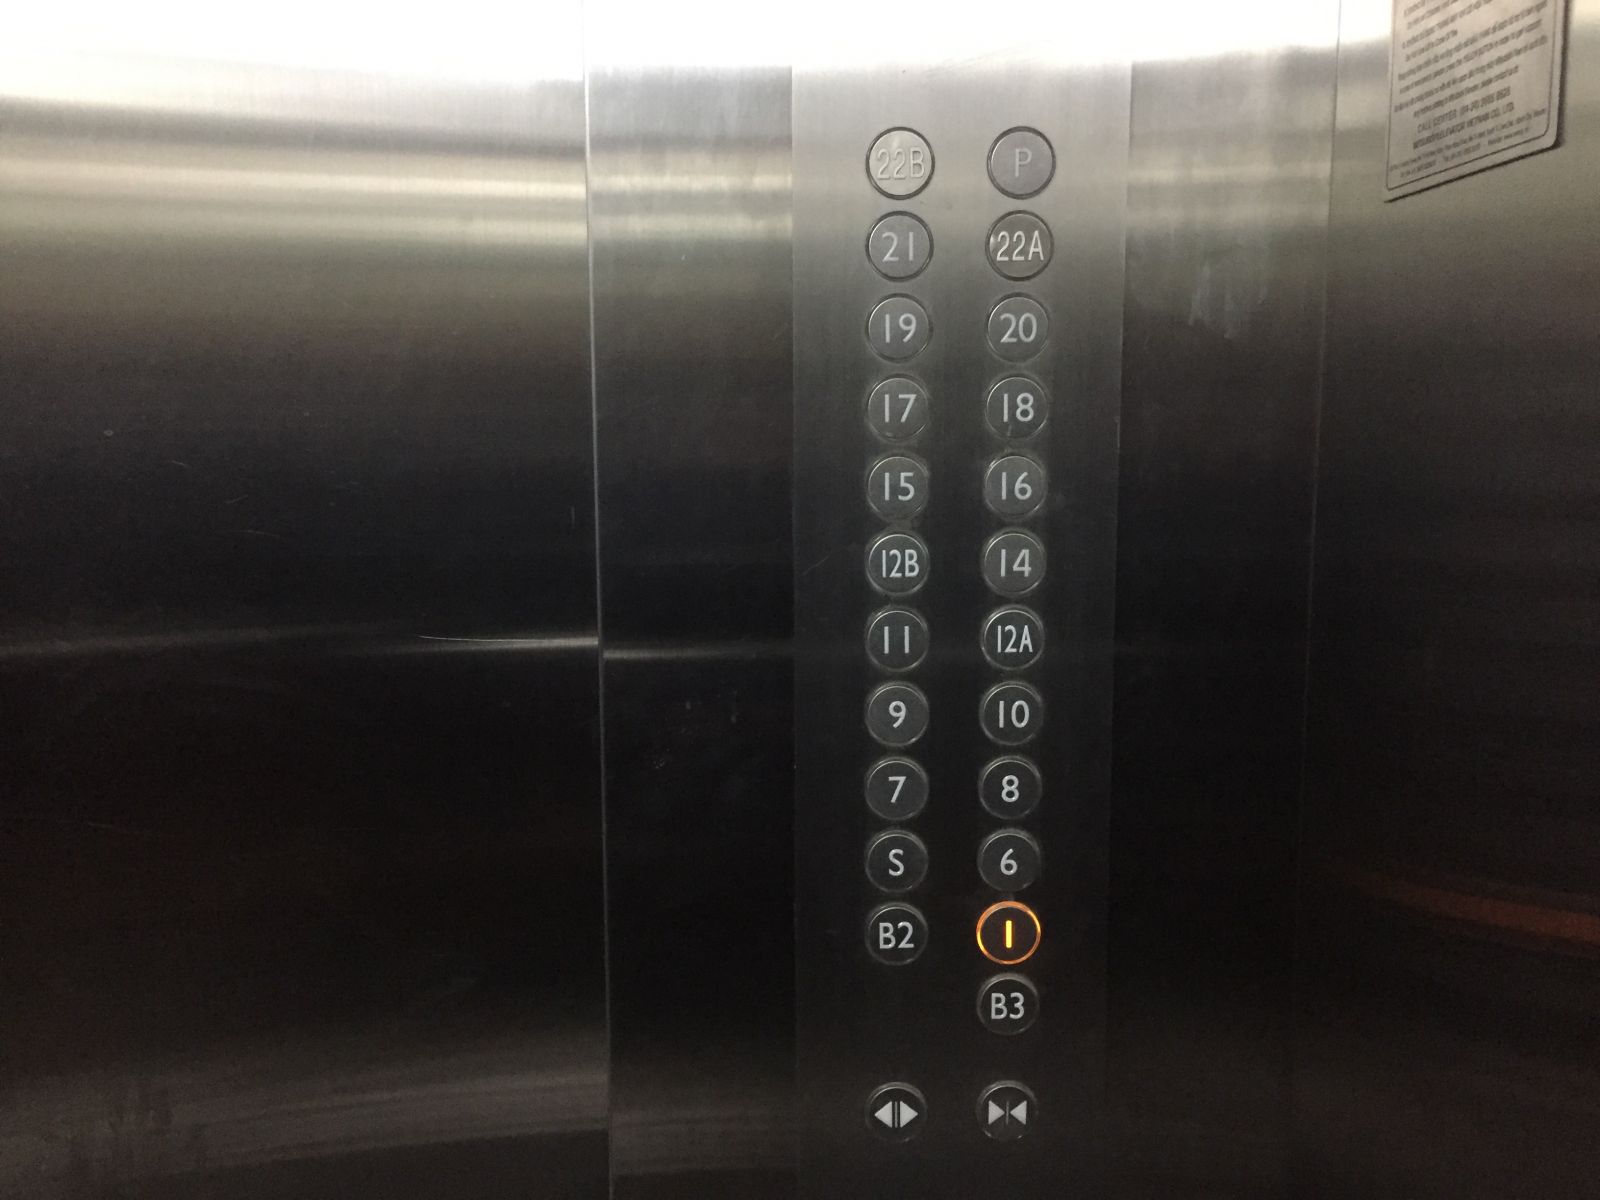 nhưng thang máy lại không có phím bấm tầng 24, 25, 26, 27.